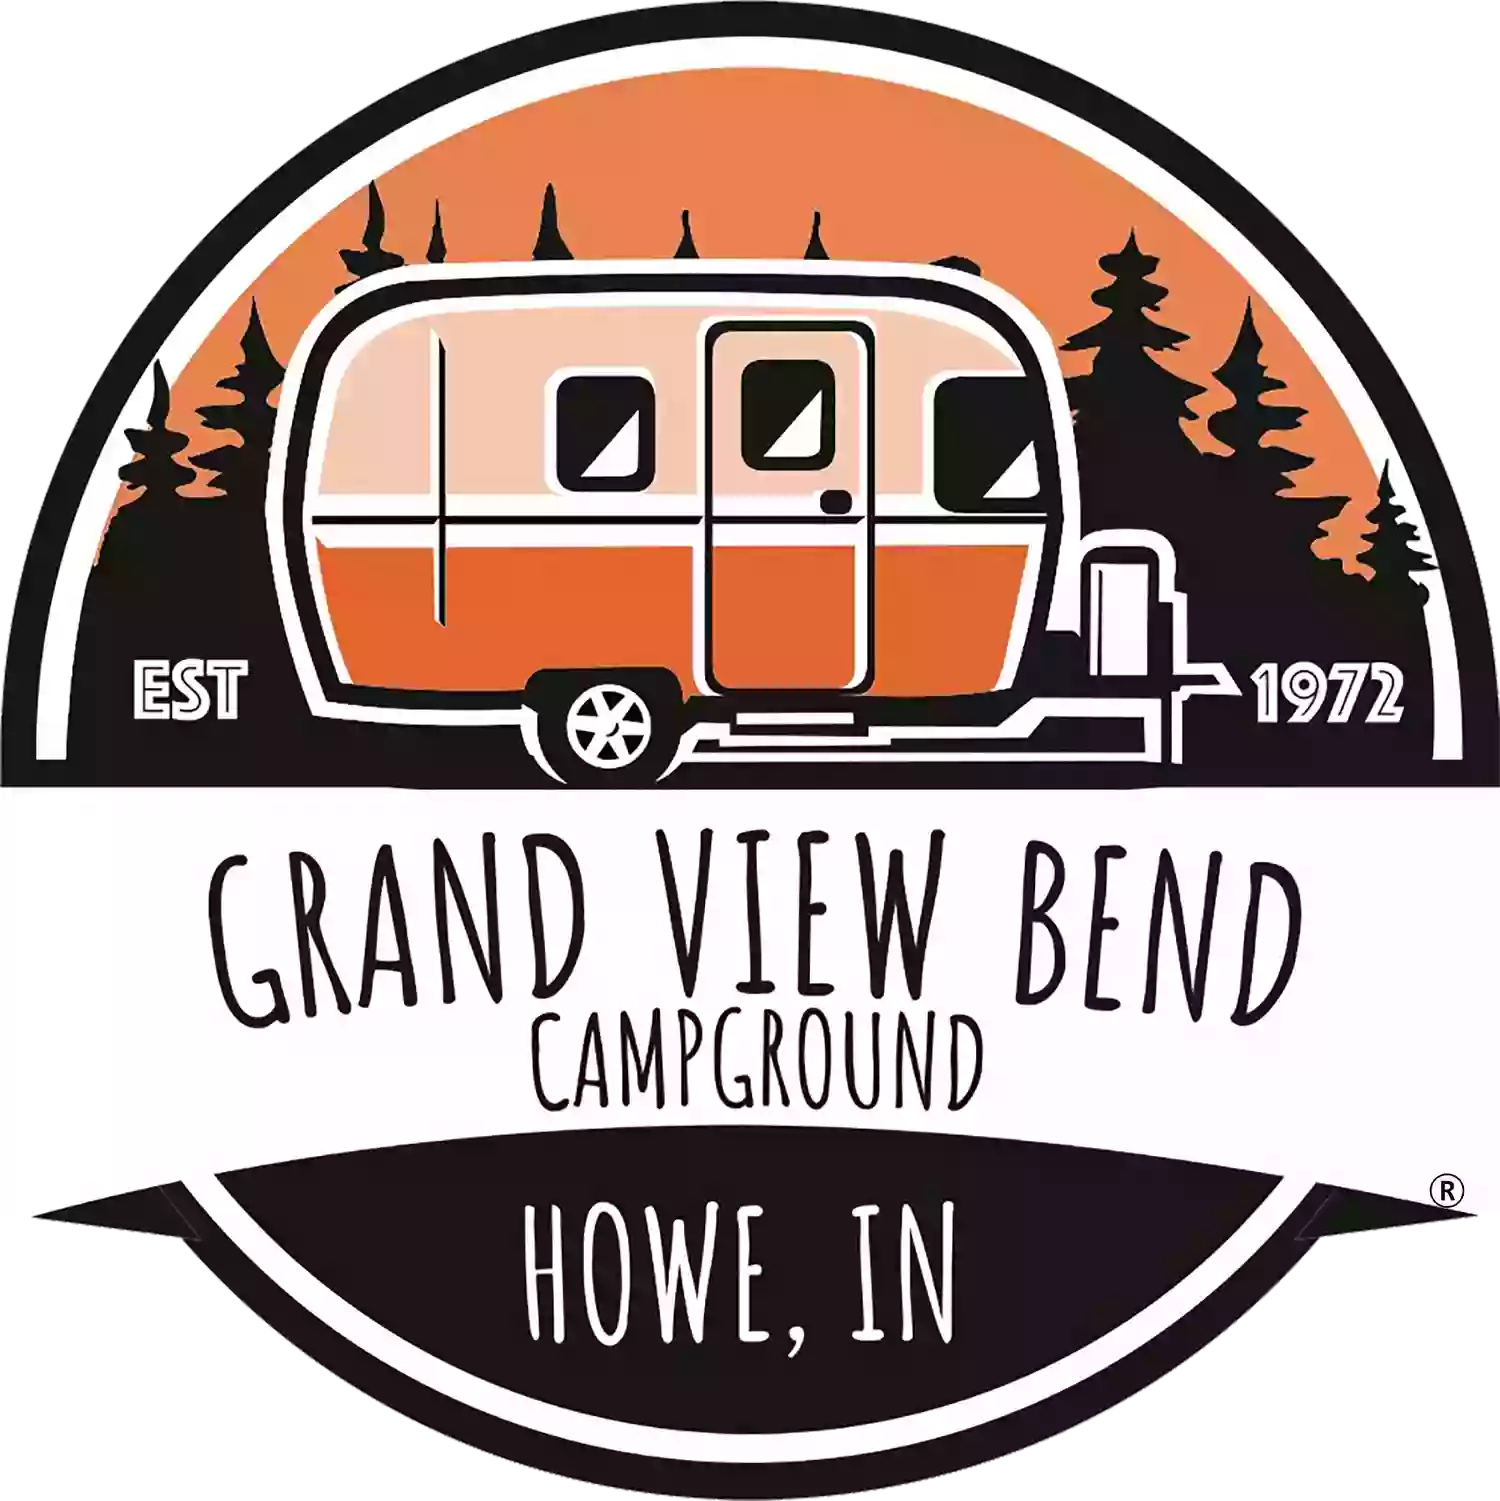 Grandview Bend